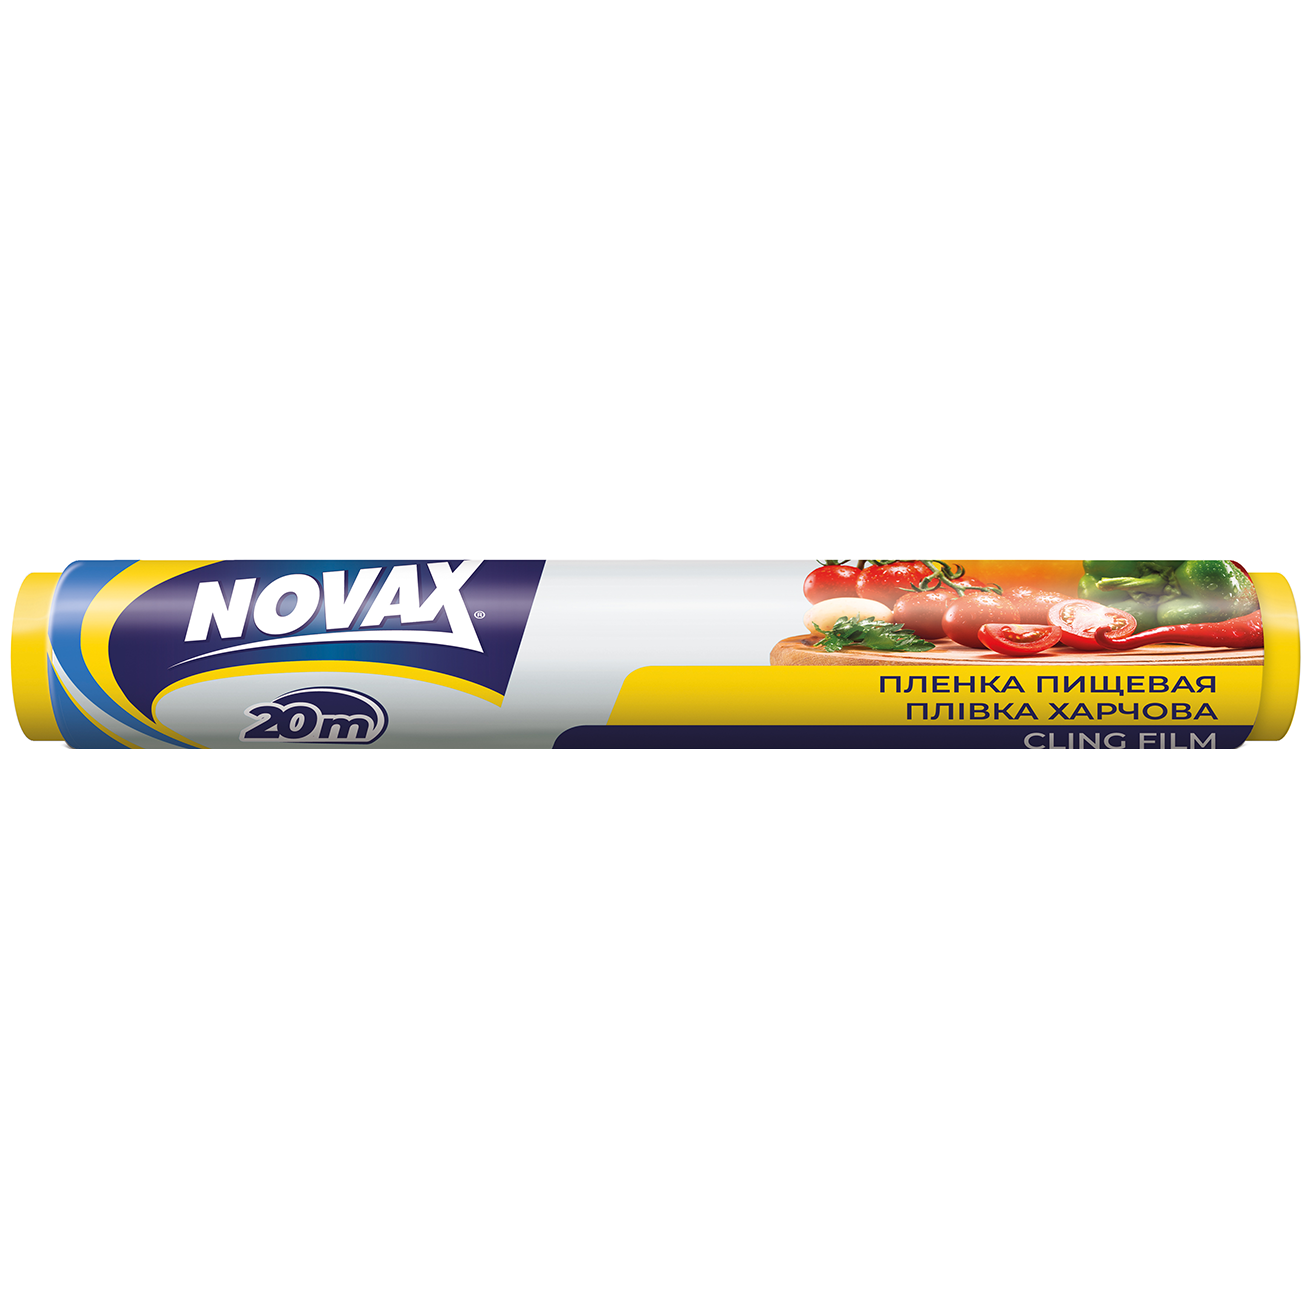 Плівка для продуктів Novax, 20 м - фото 1